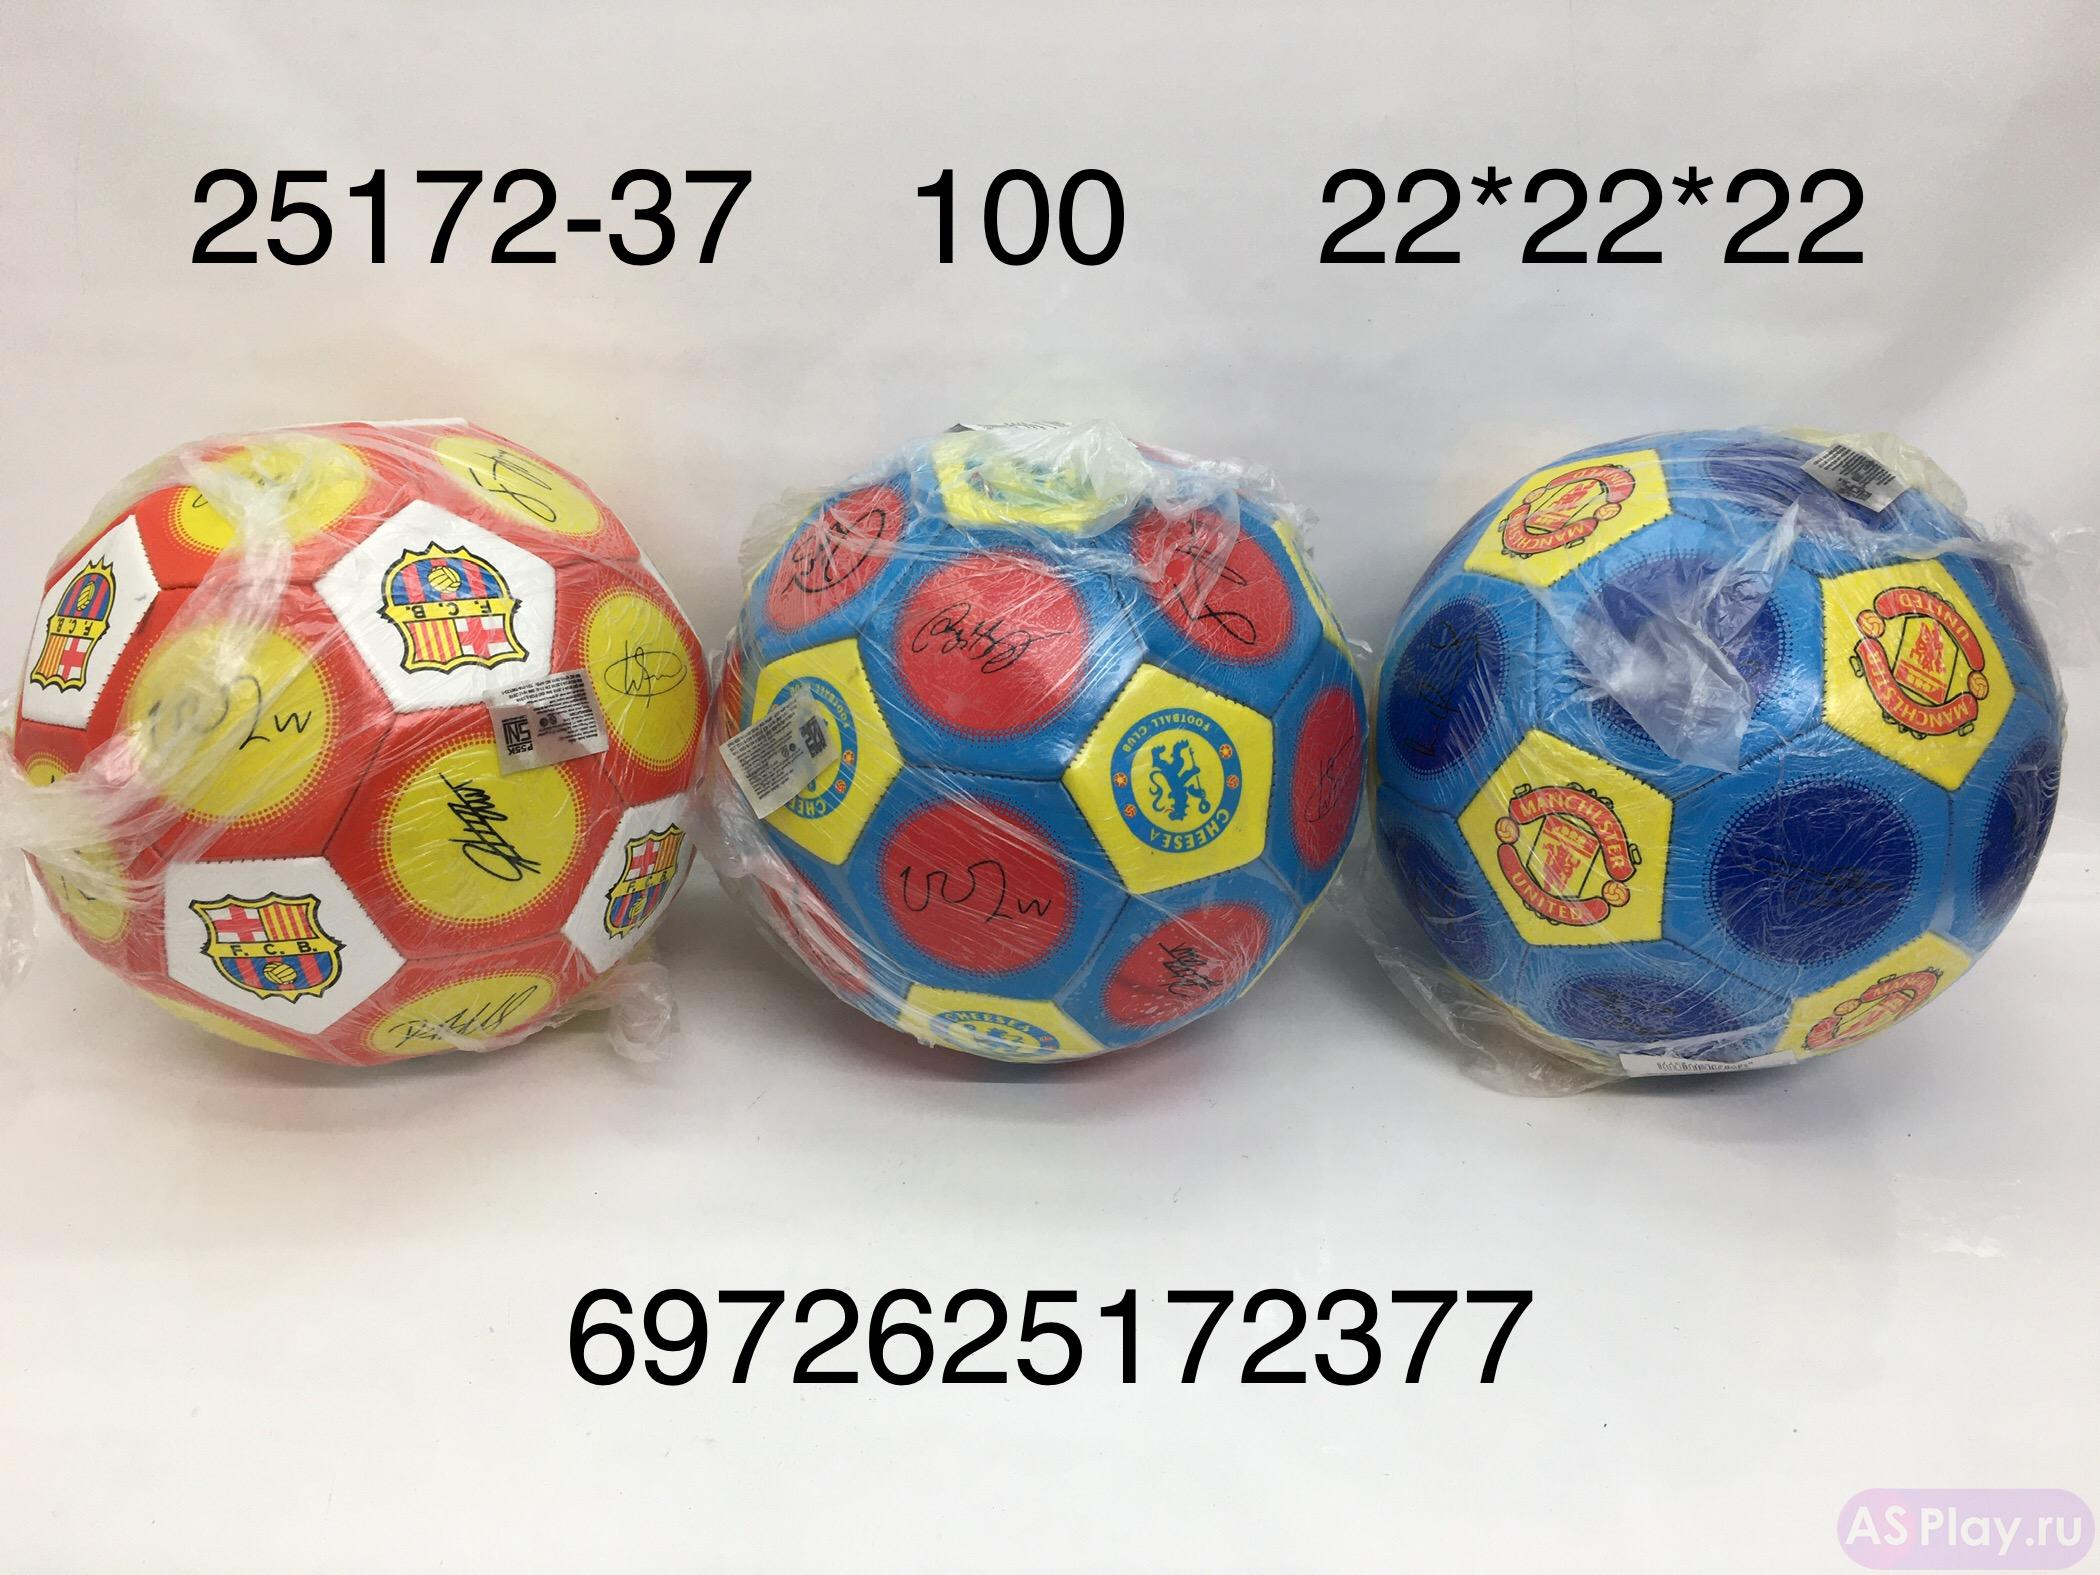 25172-37 Мяч футбол 100 шт в кор.  25172-37